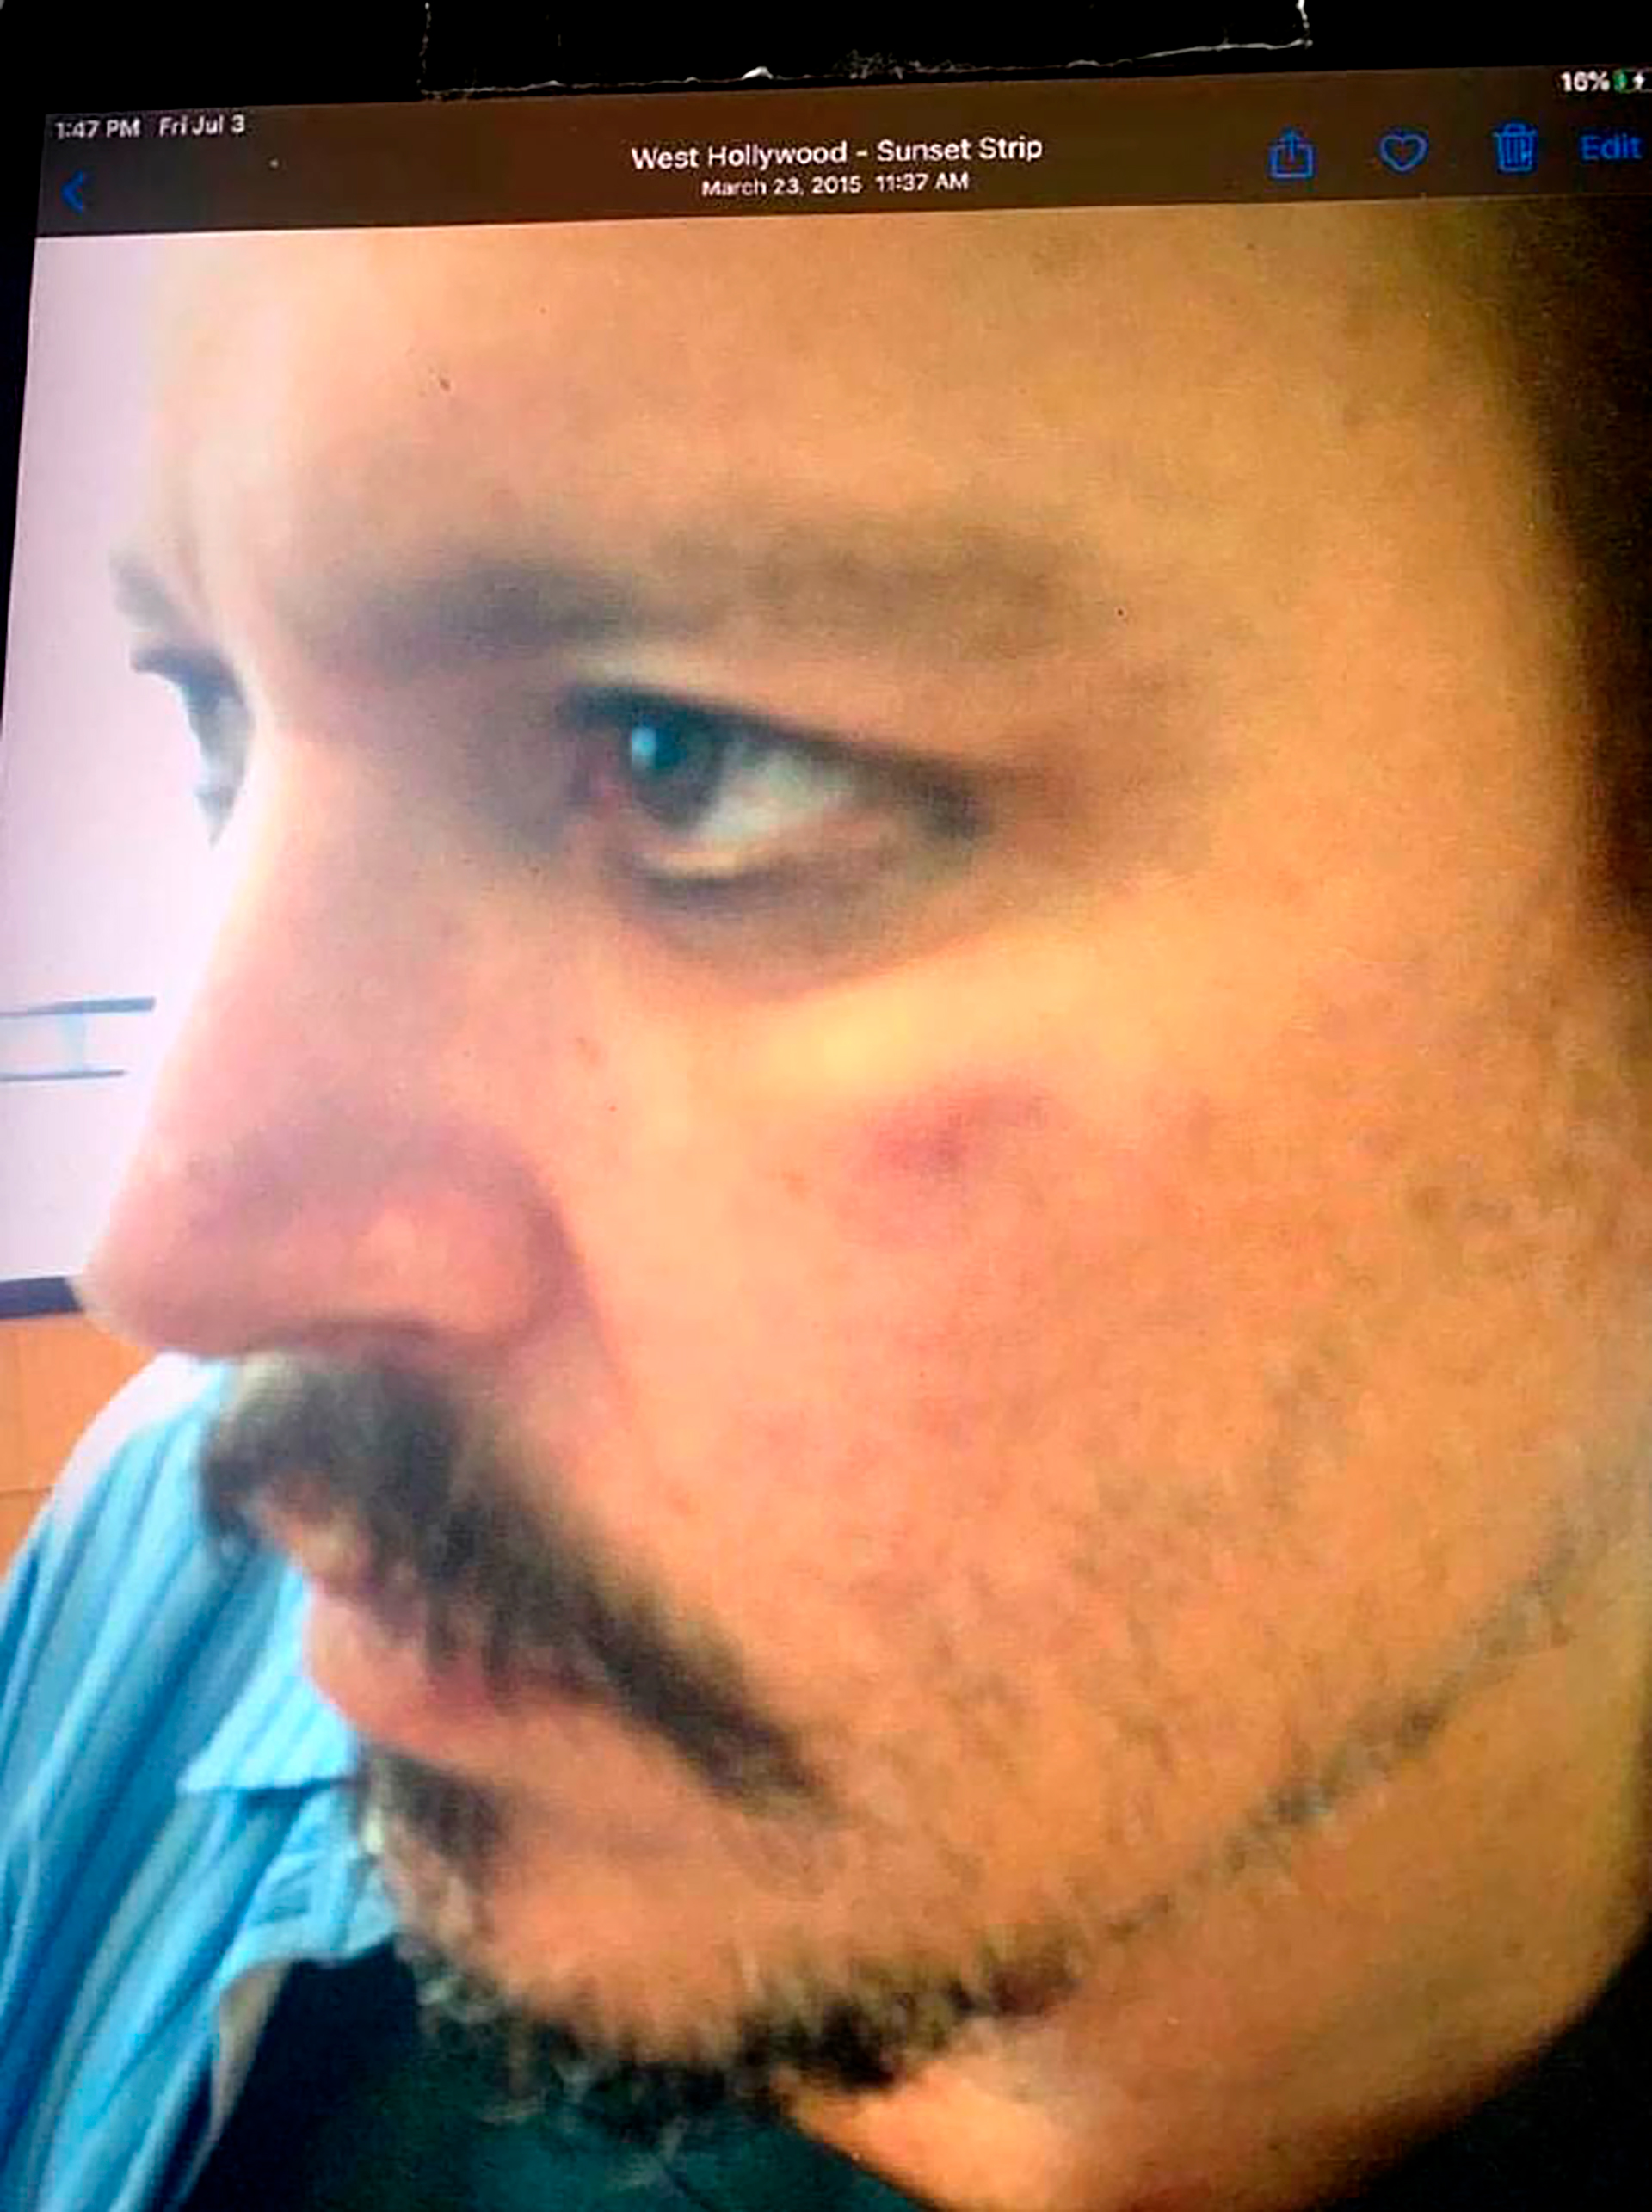 El guardia de seguridad de Johnny Depp, Sean Bett, mostró fotografías del actor con un ojo morado después de que su entonces esposa, Amber Heard, supuestamente lo golpeó. Dijo que fue tomada en abril de 2016, pero la defensa de The Sun afirma de que en realidad fueron tomadas en marzo de 2015